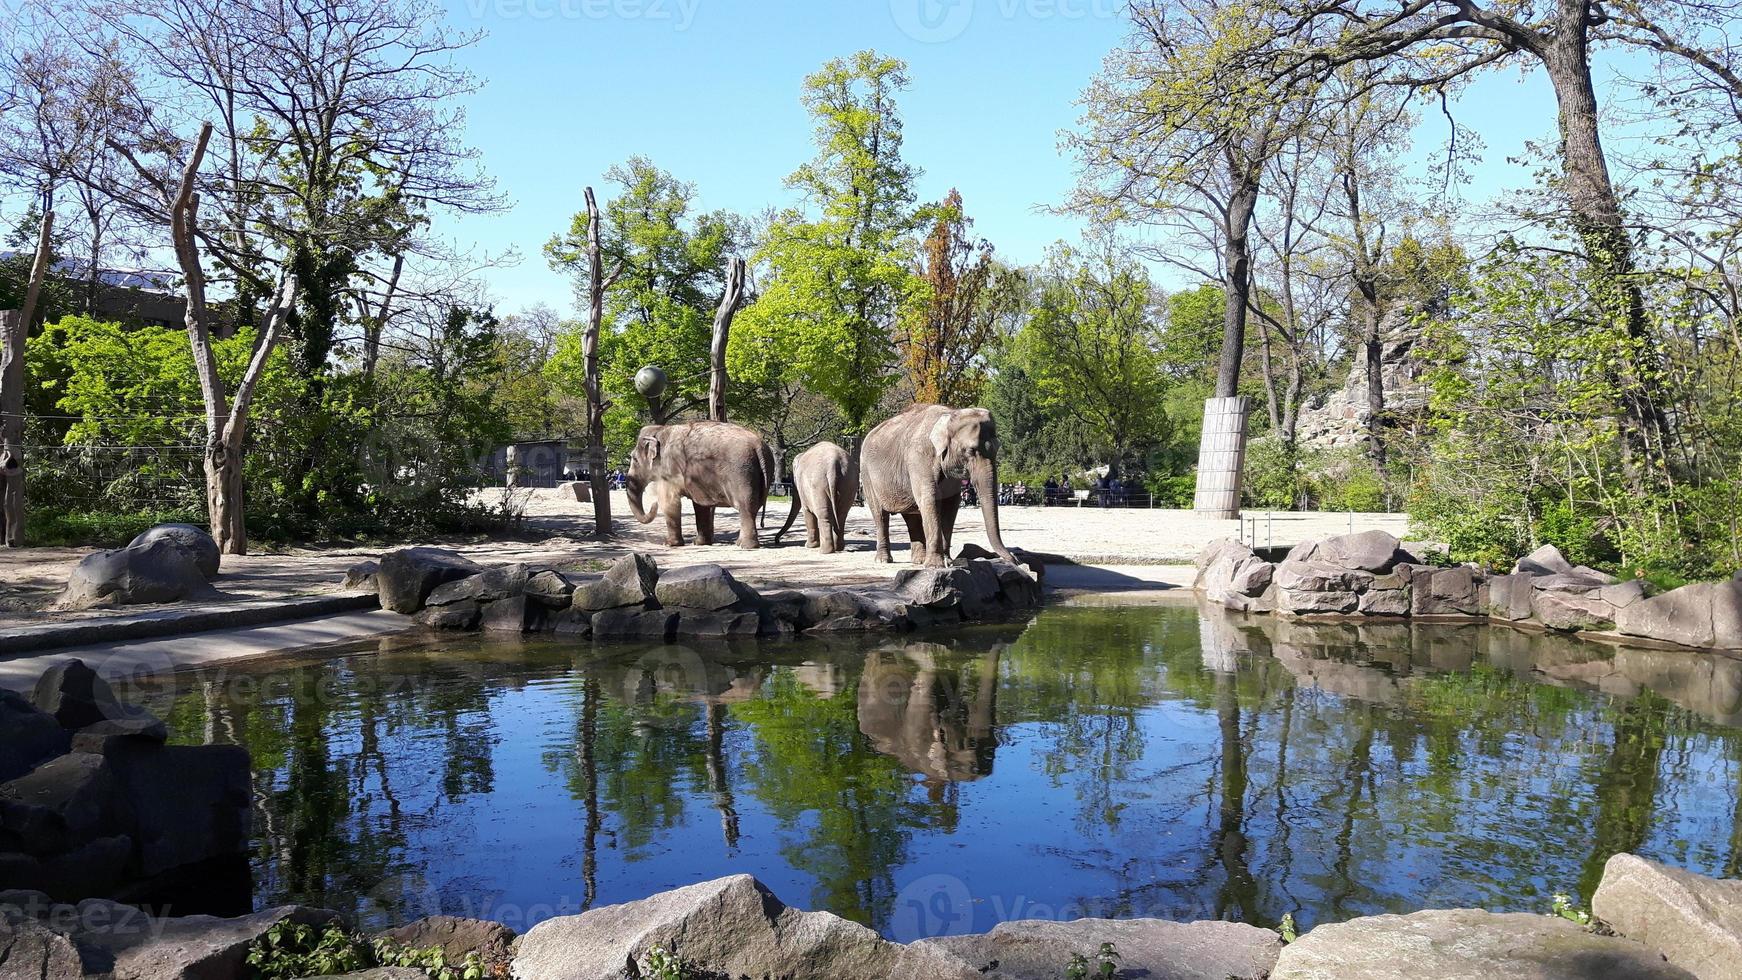 drie olifanten koesterden zich aan de rand van het water in een kooi in een dierentuin foto